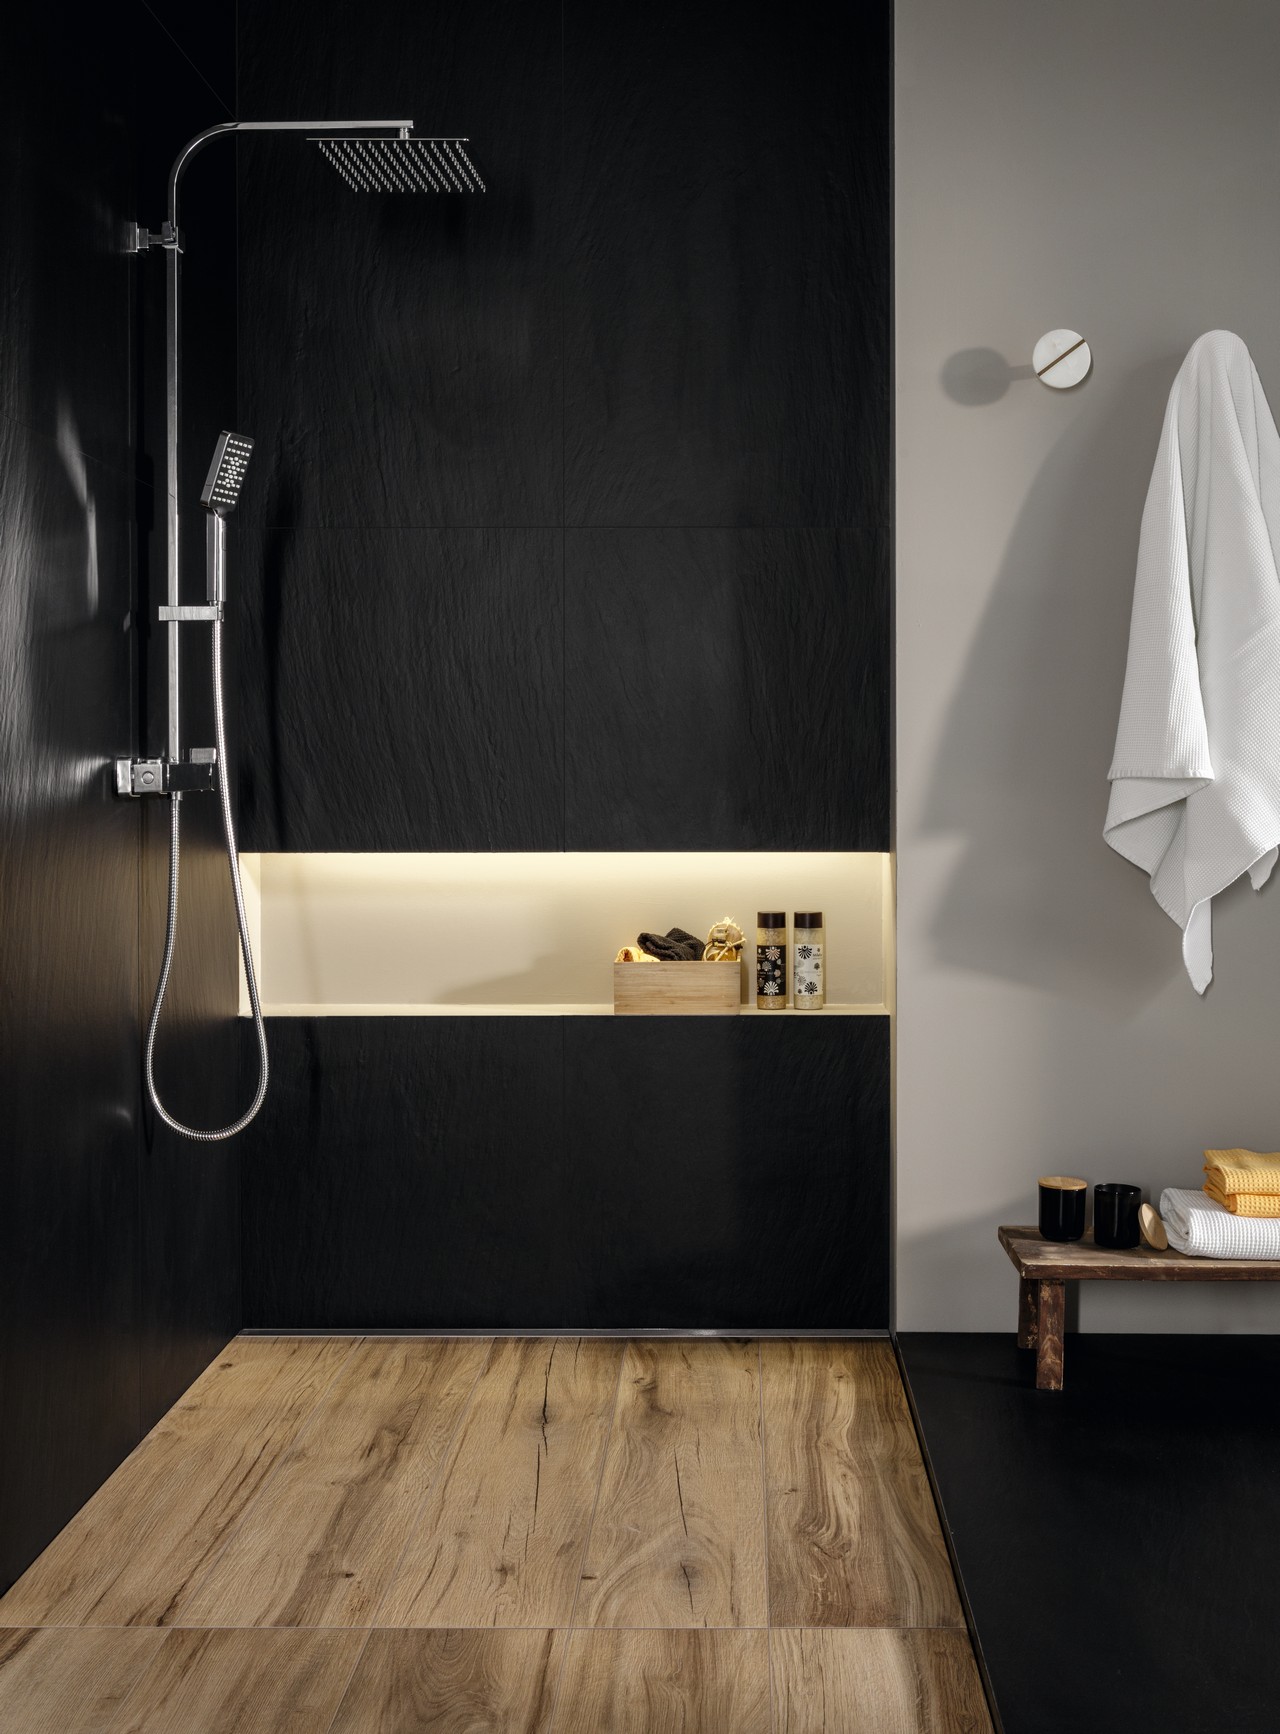 Salle de bains moderne avec douche, grès cérame effet bois et pierre dans des tons de noir et de beige. - Inspirations Iperceramica